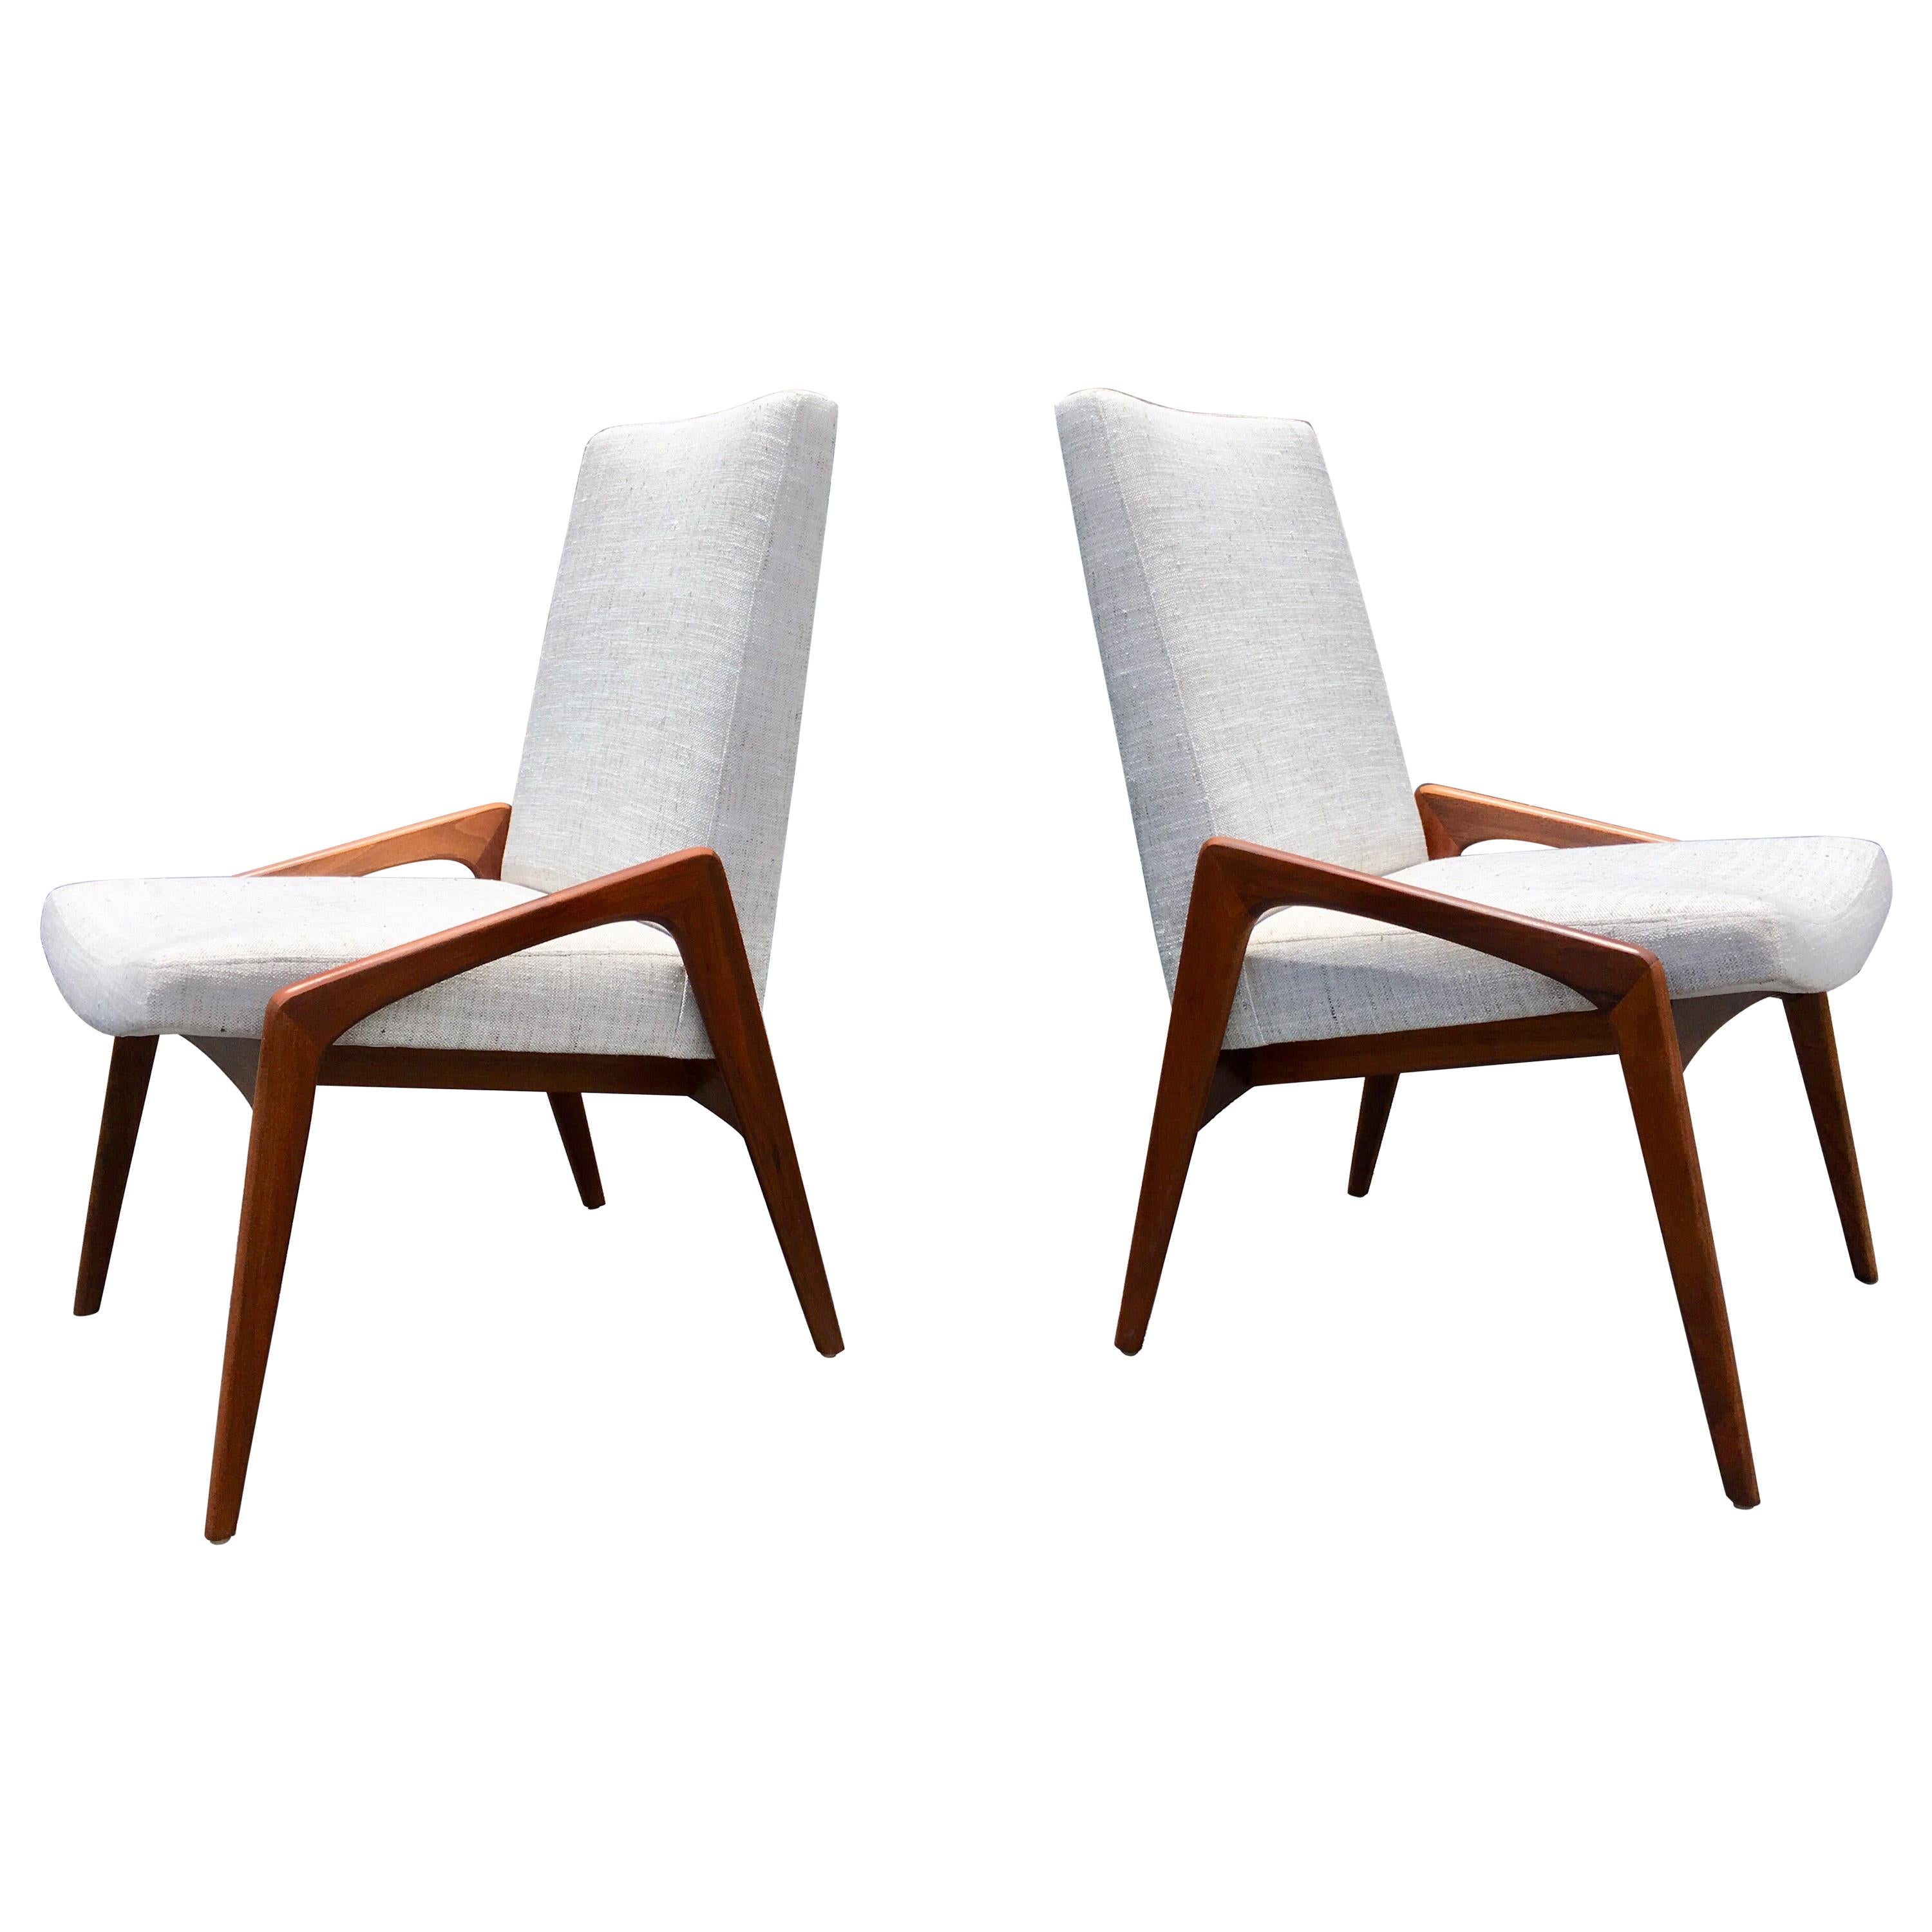 Belle paire de chaises modernes du milieu du siècle, très proches du style de Gio Ponti. Excellent état, quatre chaises disponibles.